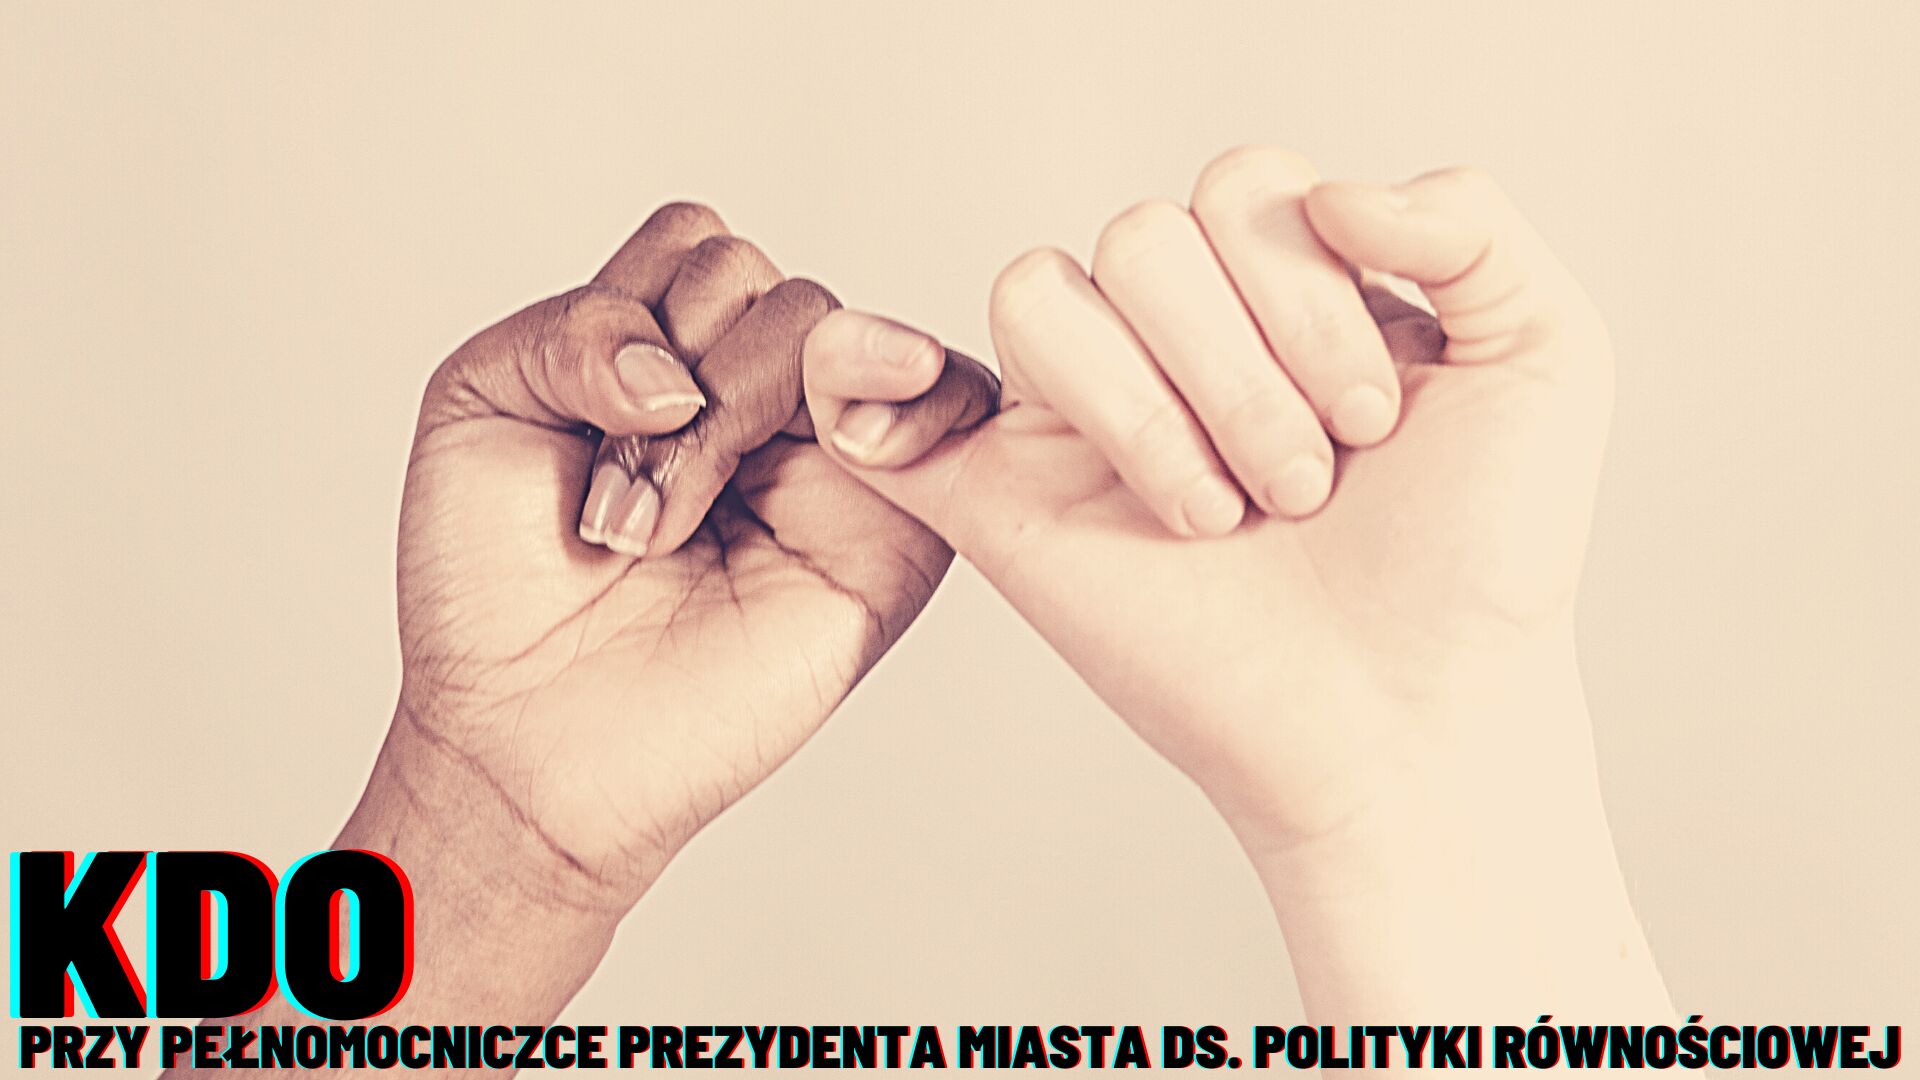 grafika ilustrująca: dwie dłonie o różnych odcieniach skóry trzymające się za małe palce, w dole napis "KDO przy Pełnomocniczce Prezydenta Miasta ds. polityki równościowej" - grafika artykułu